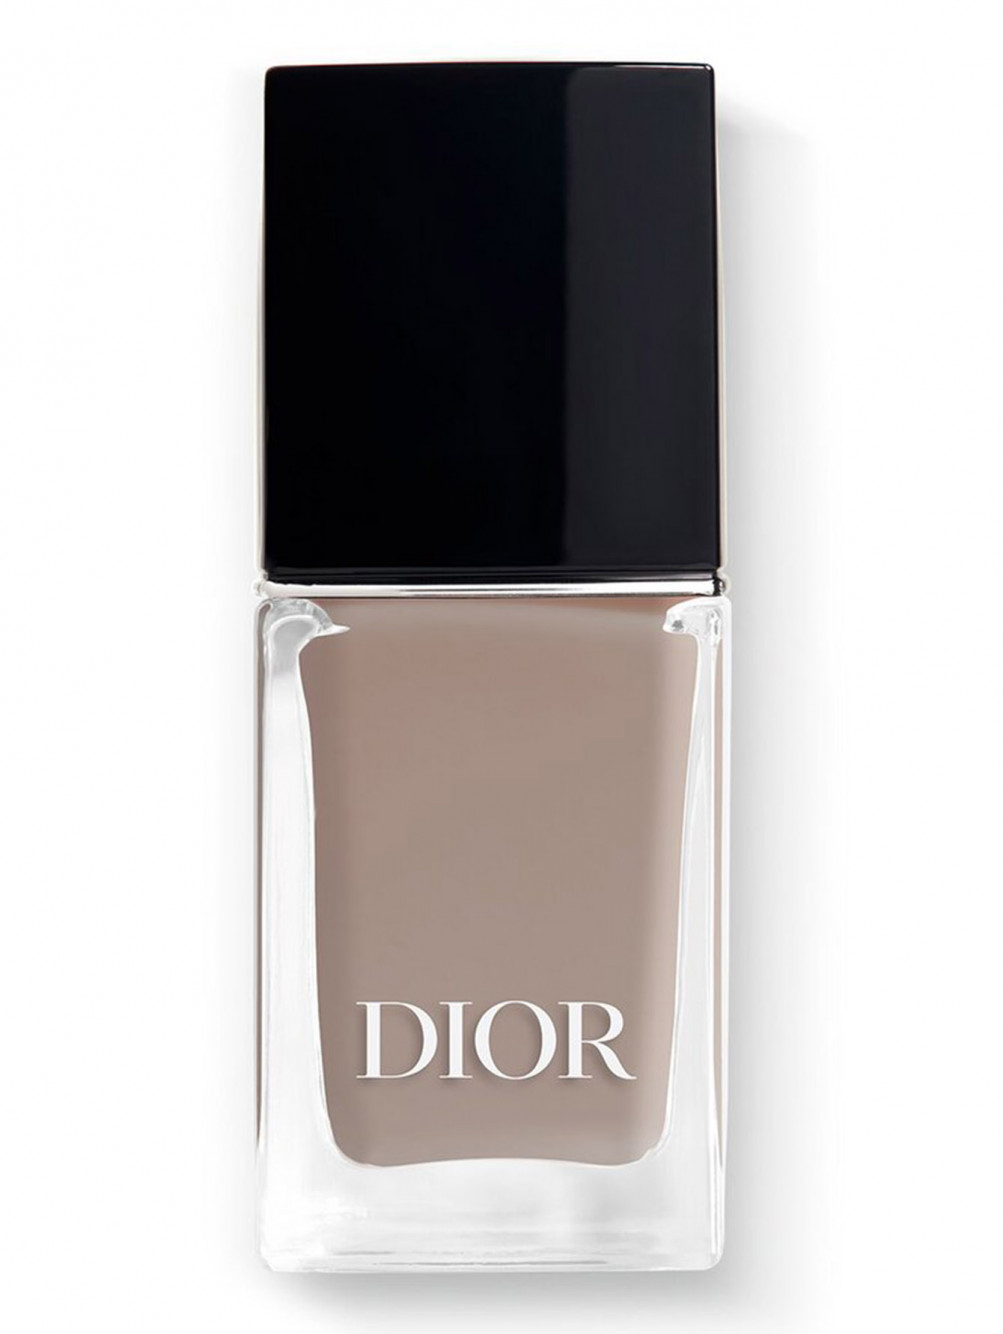 Лак для ногтей с эффектом гелевого покрытия Dior Vernis, 206 Гри Диор, 10 мл - Общий вид